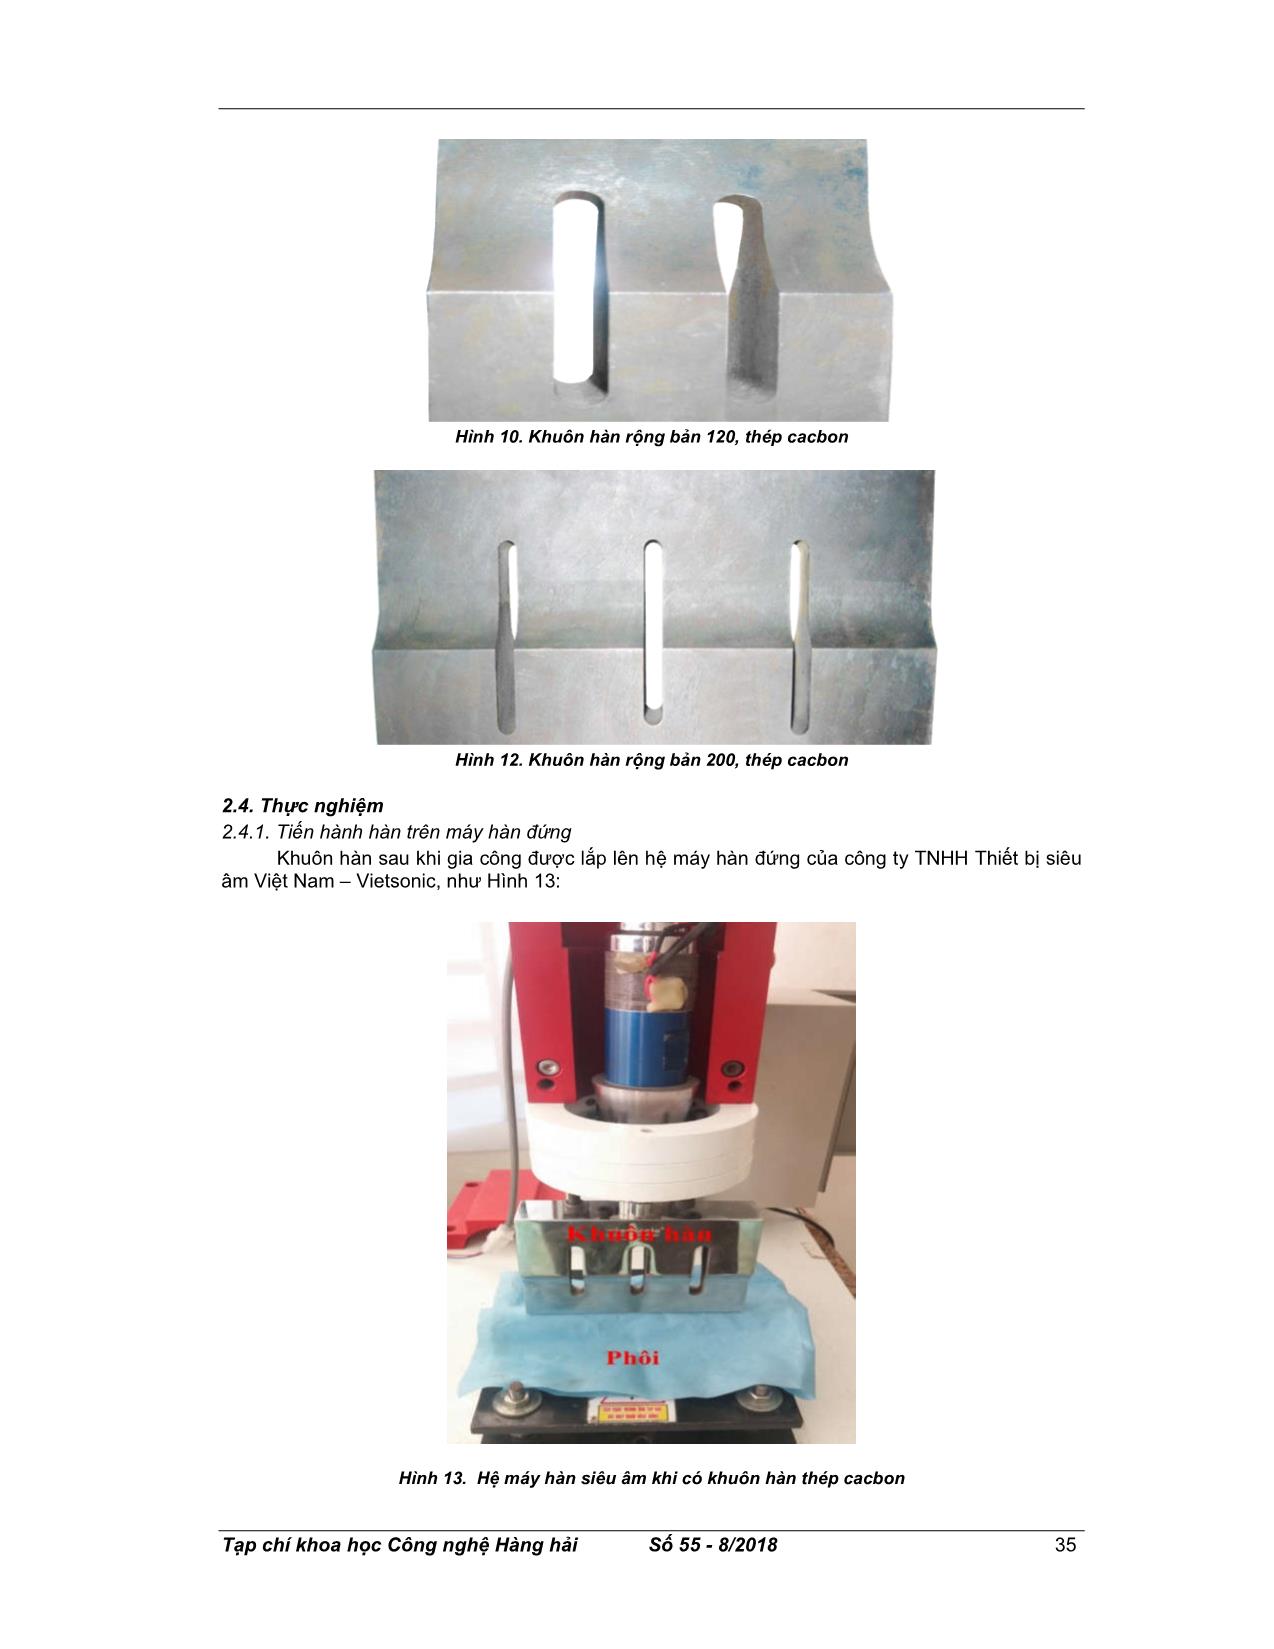 Nghiên cứu chế tạo thử nghiệm khuôn hàn thép cho máy hàn nhựa nhiệt dẻo bằng công nghệ siêu âm trang 5